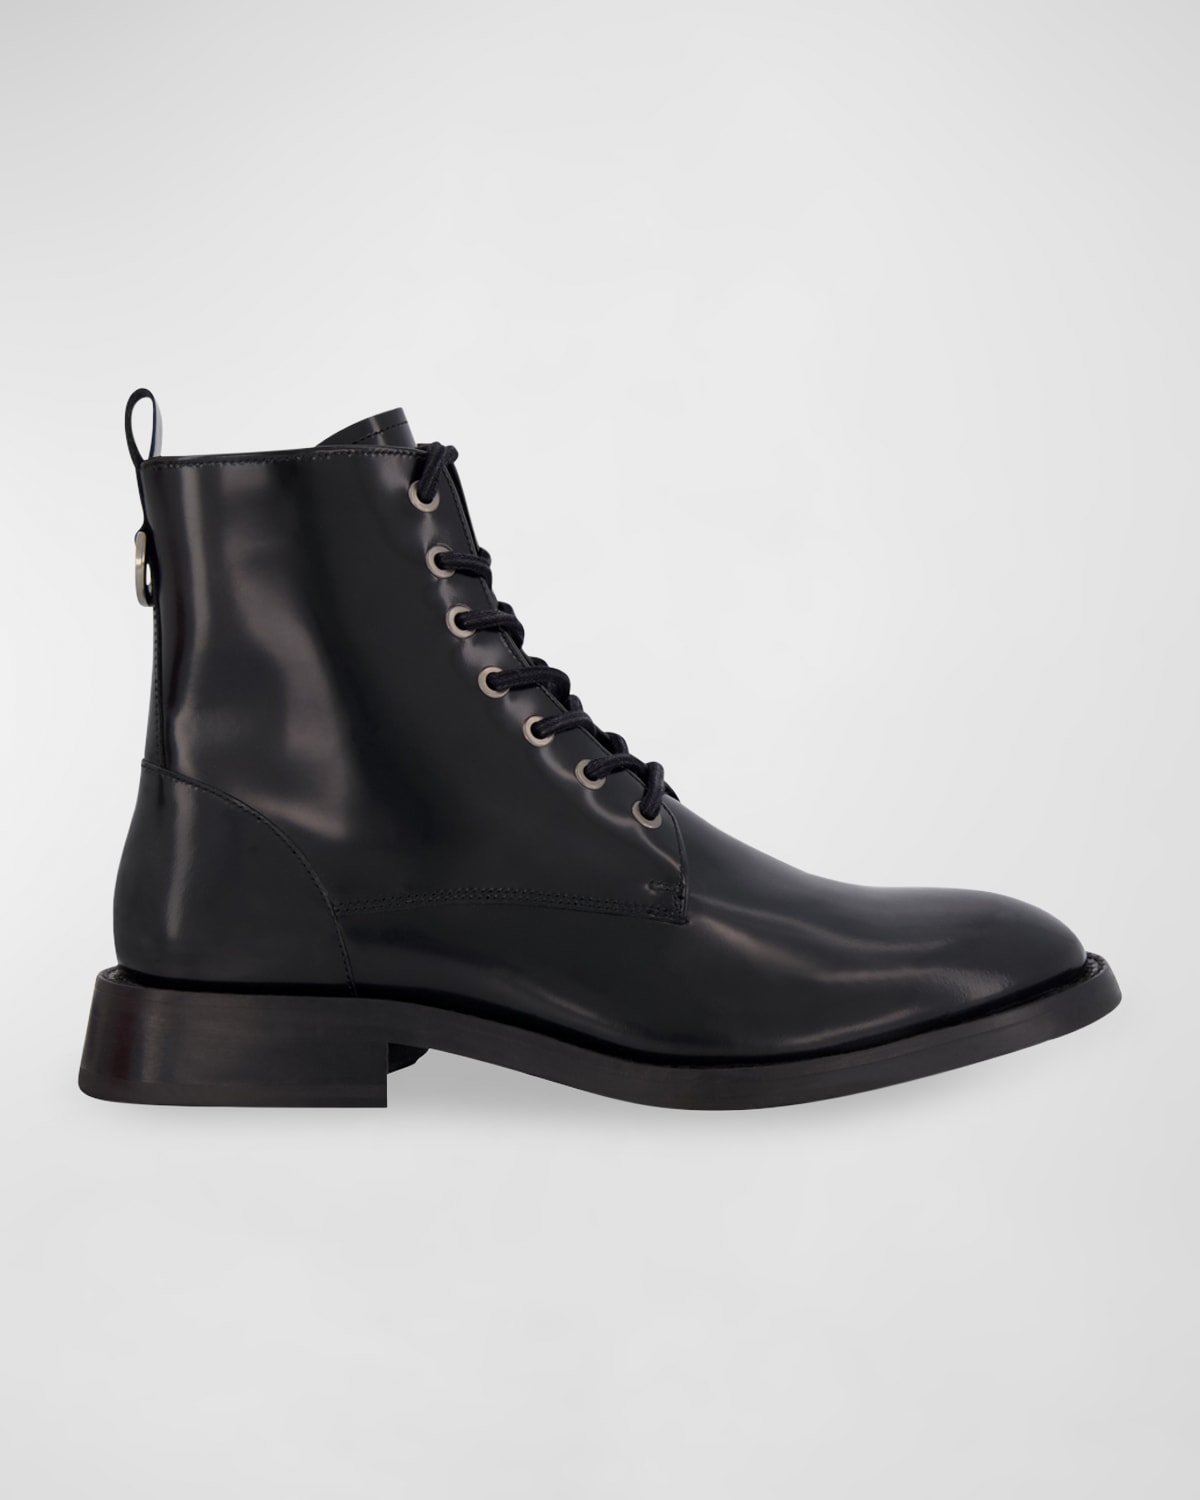 Men's Box Leather Combat Boots